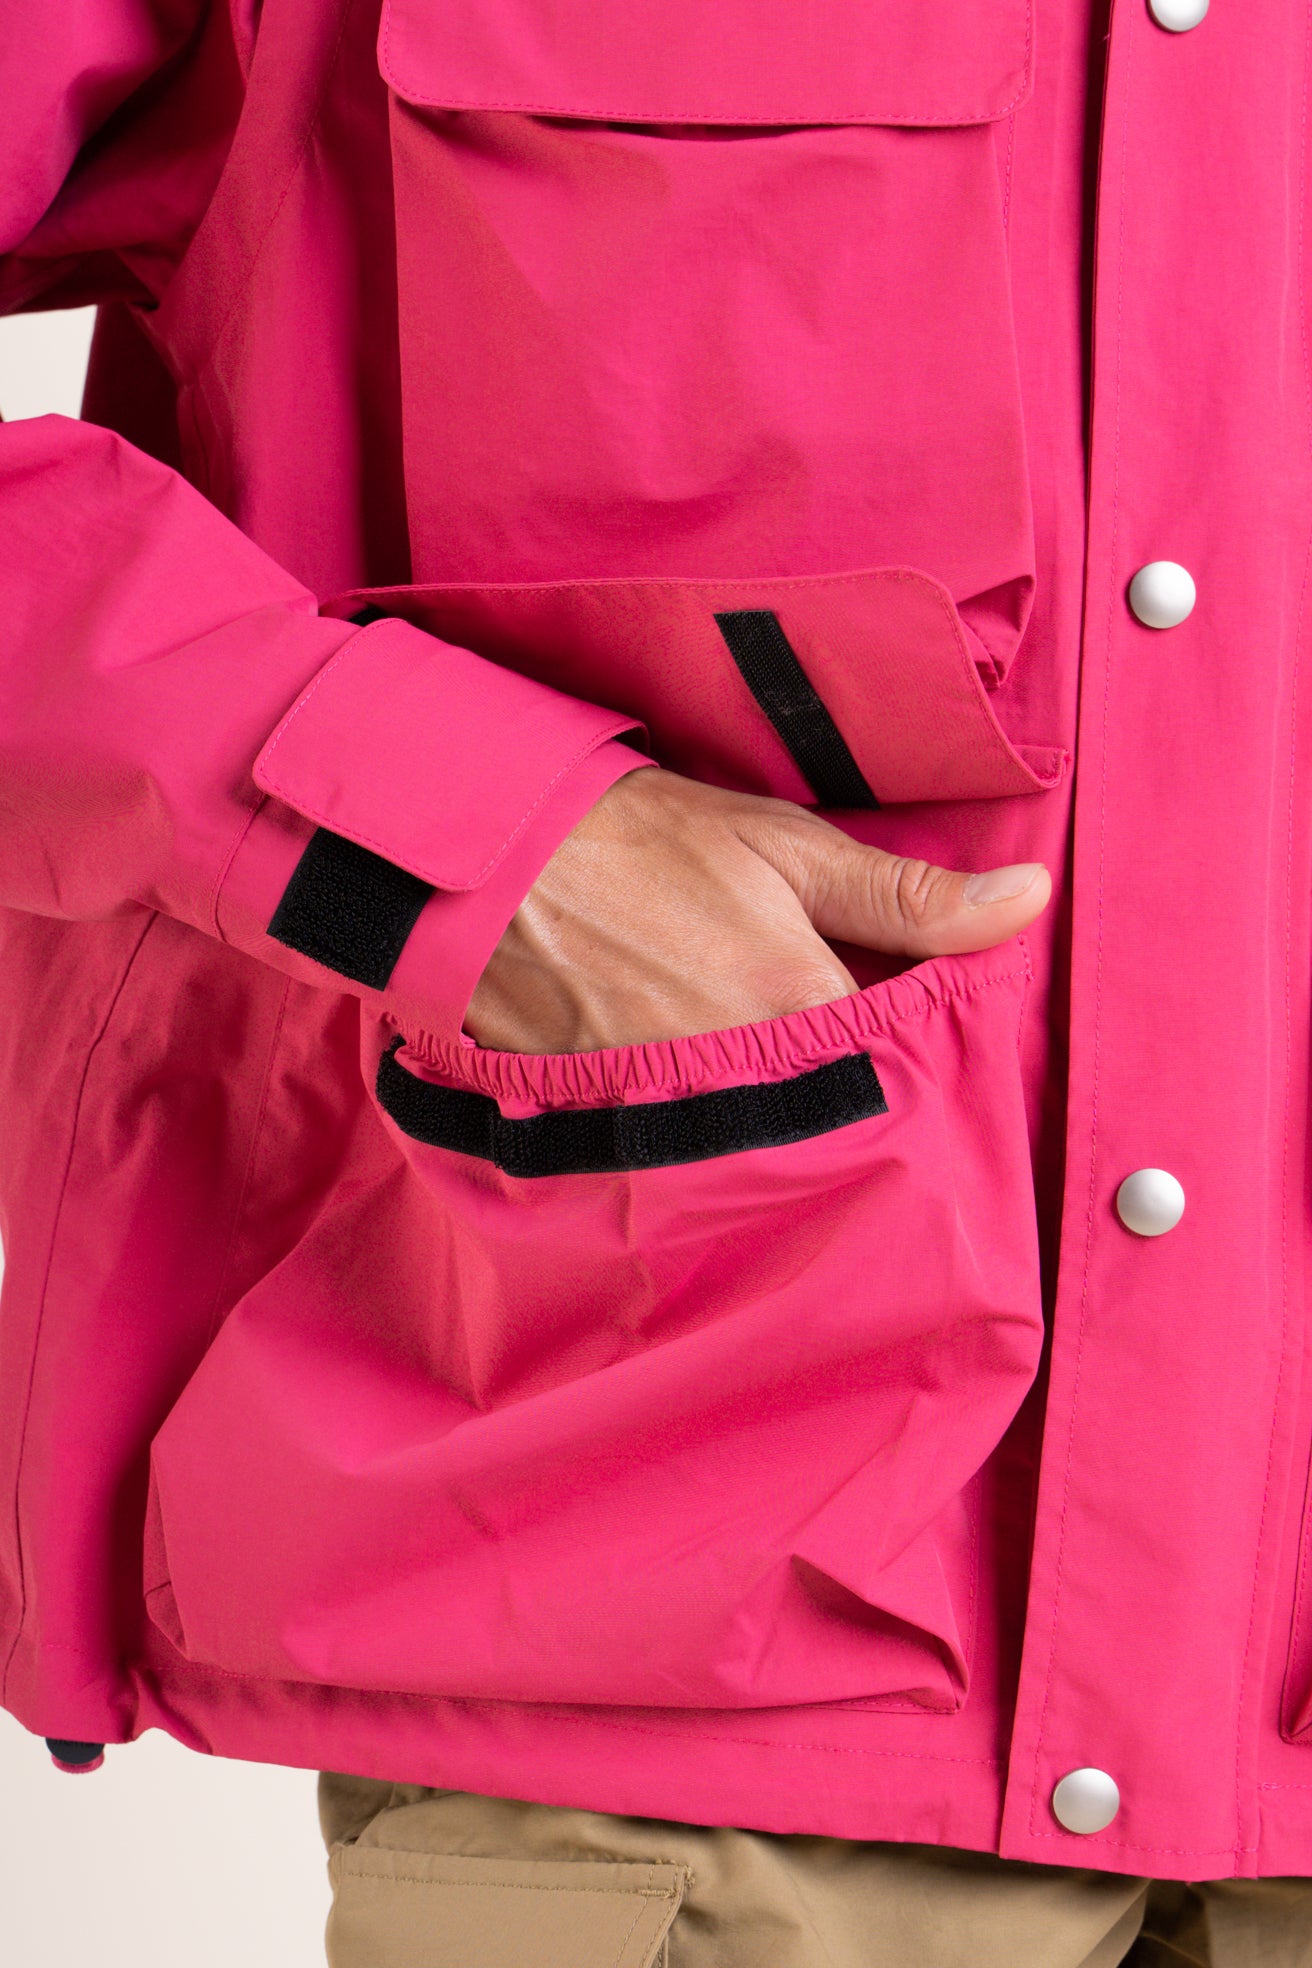 Saint Cyr - multipocket jacket - Flotte #couleur_fuschia